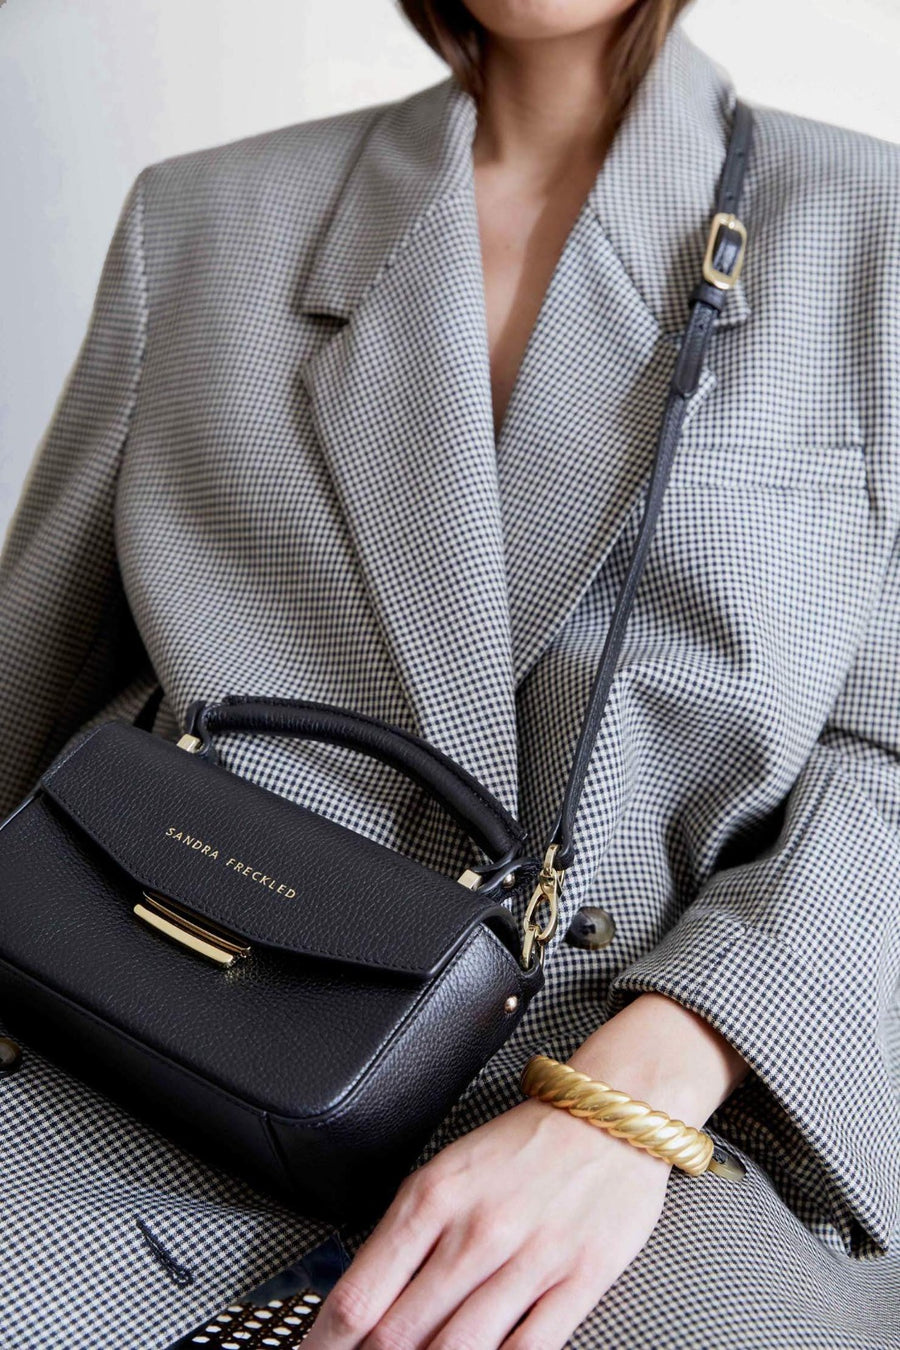 VICENTA Leather Bag for Stylish Women 💜Sandra Freckled – SANDRA FRECKLED